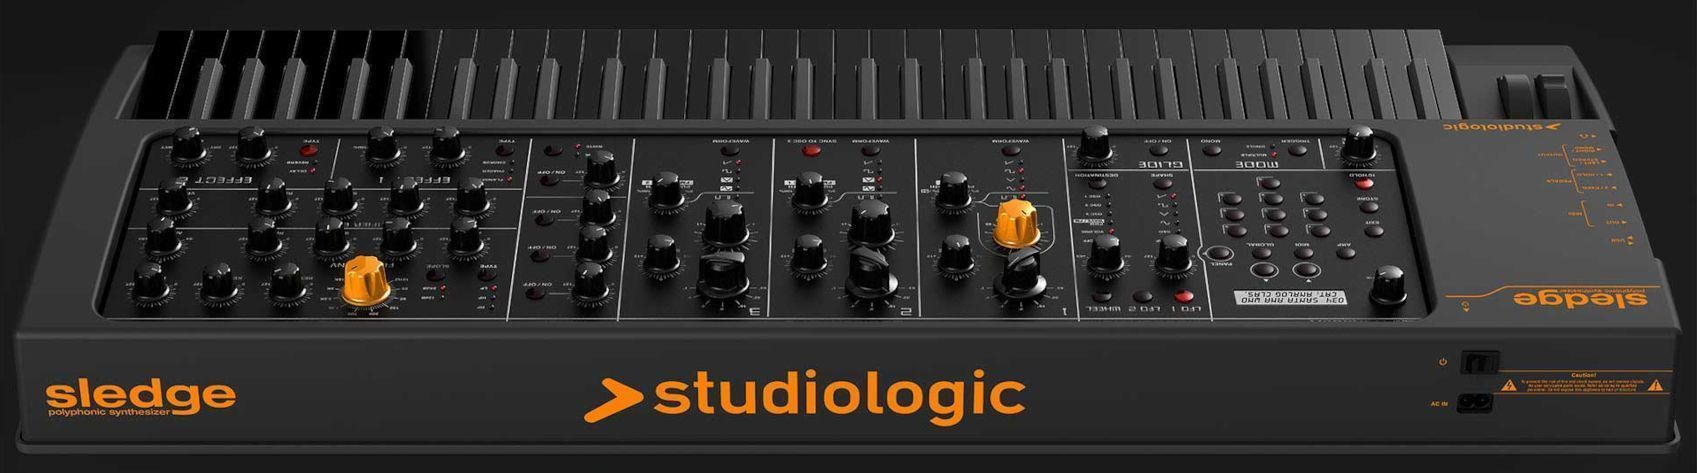 Studiologic Sledge Black Edition - фото 4